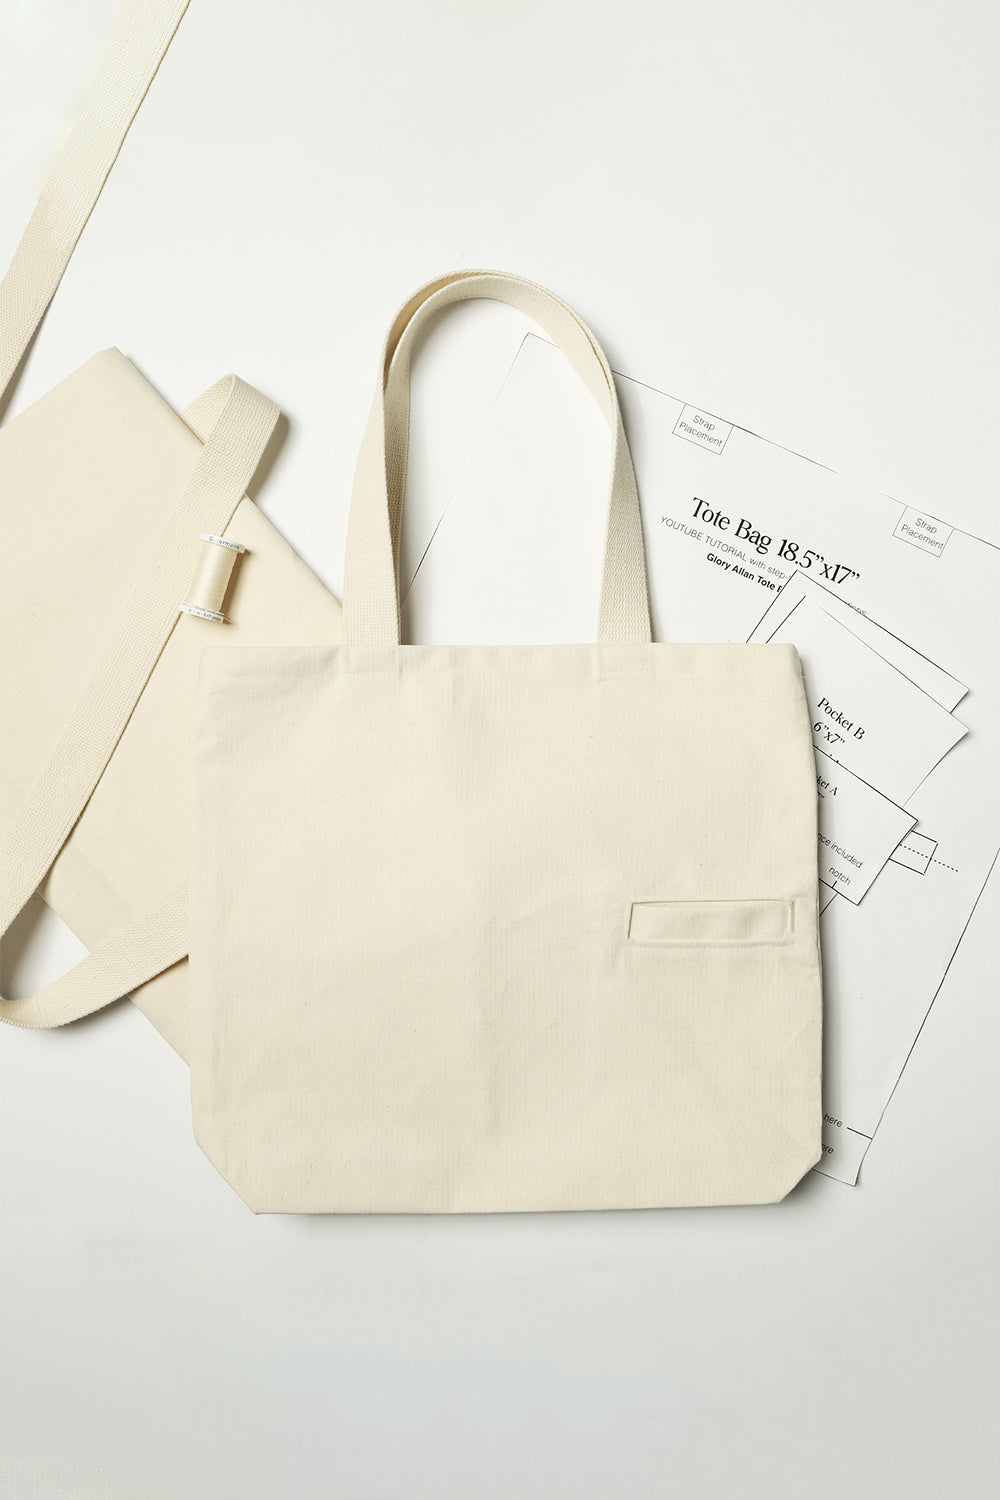 Totery, DIY Tote Bags, Tote Bags Kit